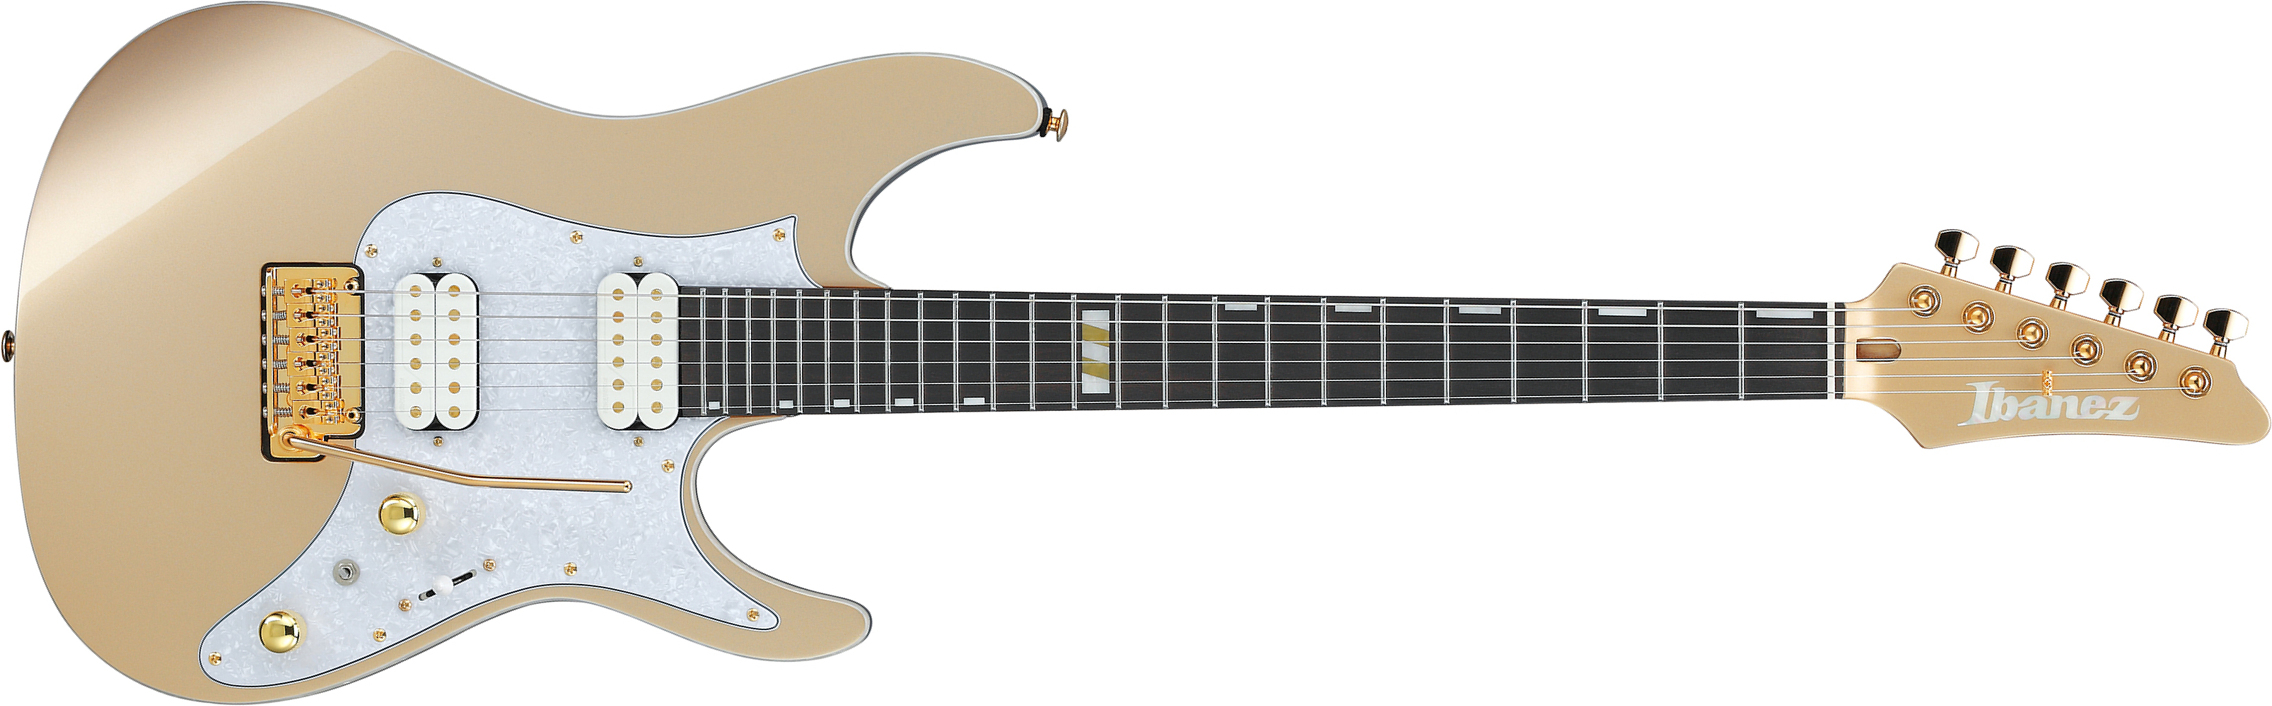 Ibanez Scott Lepage Krys10 Premium Signature 2h Fishman Fluence Trem Eb - Gold - Guitarra eléctrica con forma de str. - Main picture